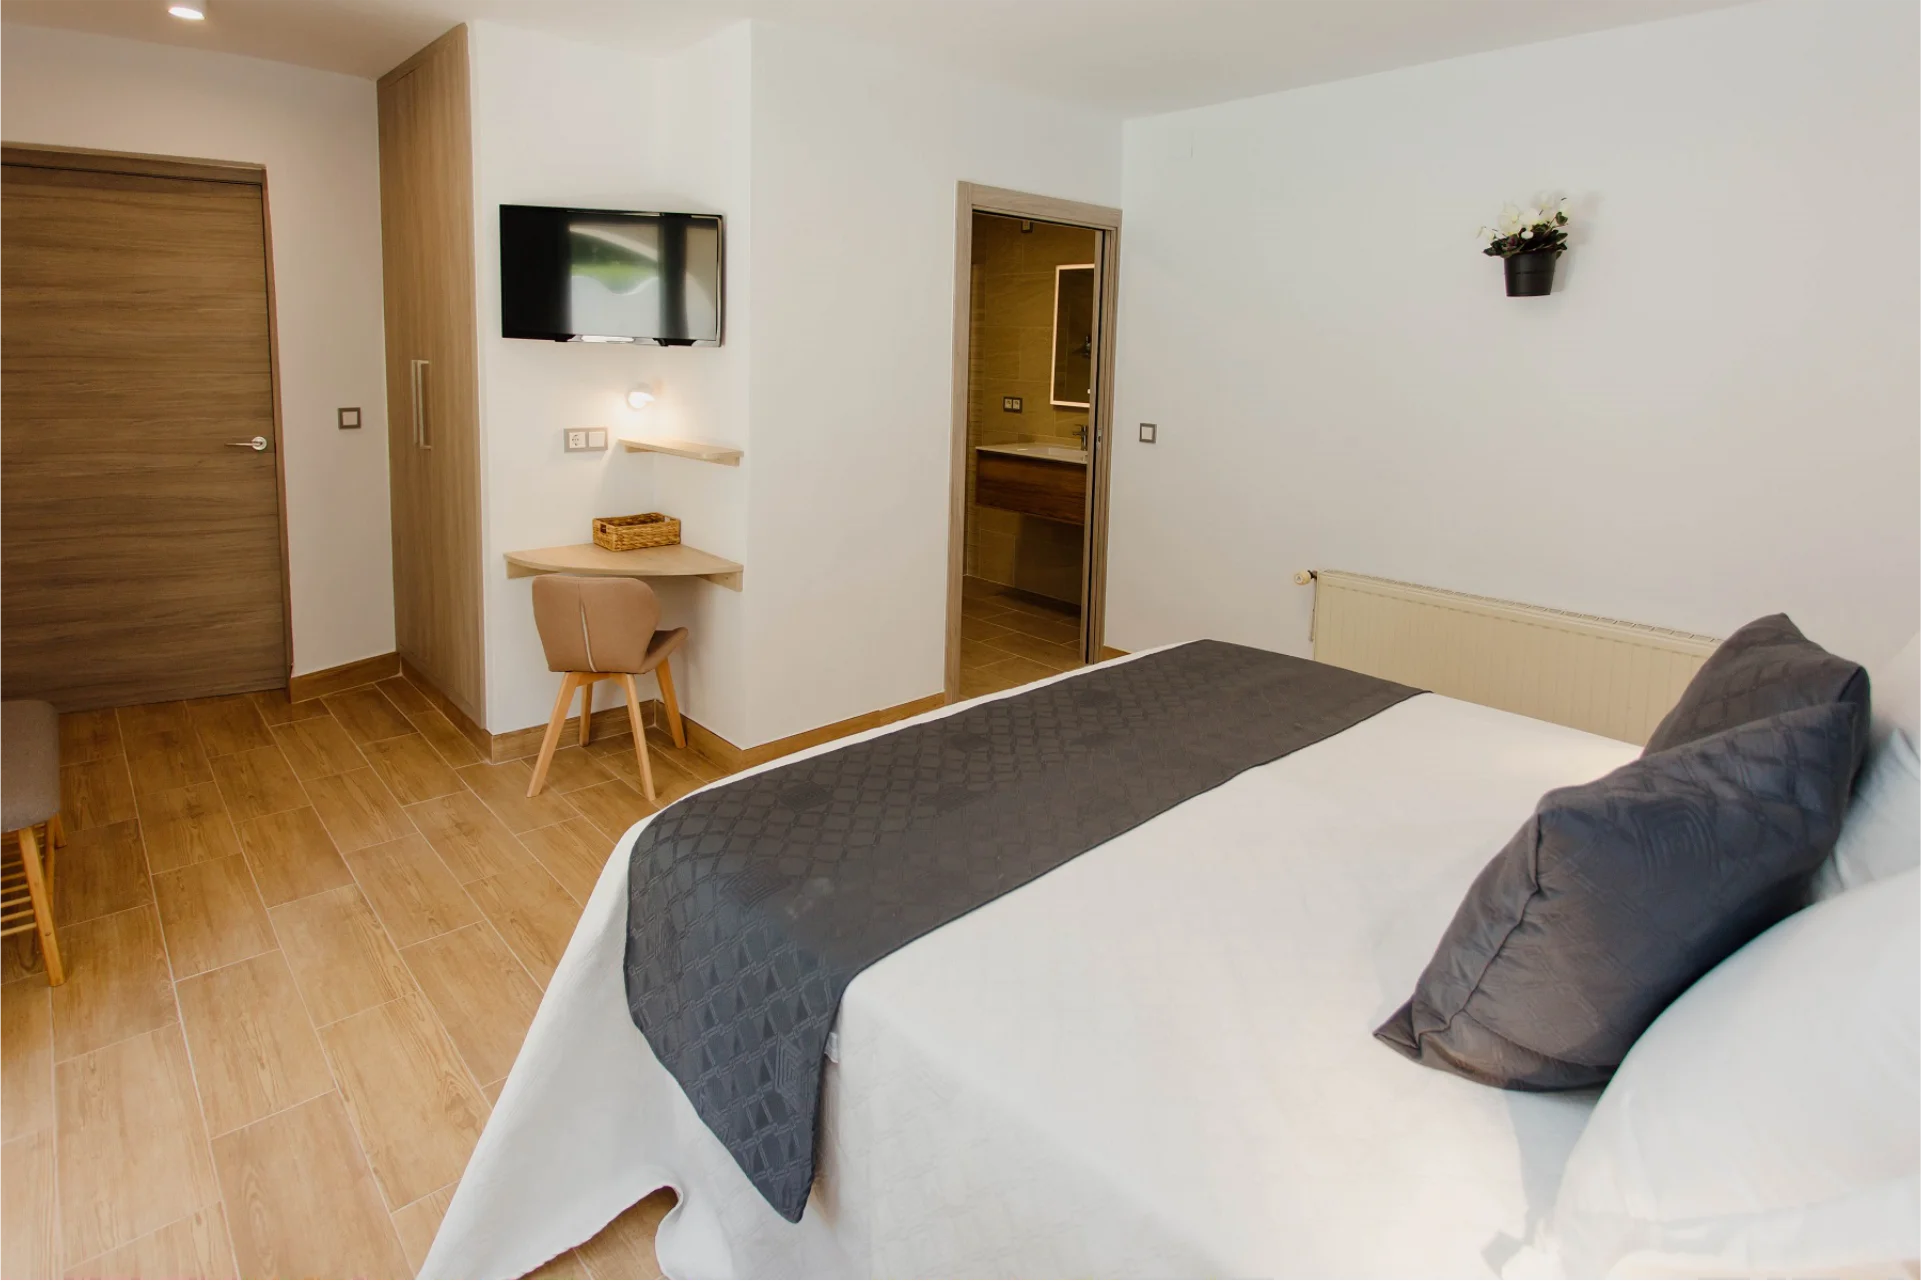 Experimenta una estancia tranquila en la habitación de nuestro alojamiento en Alicante.